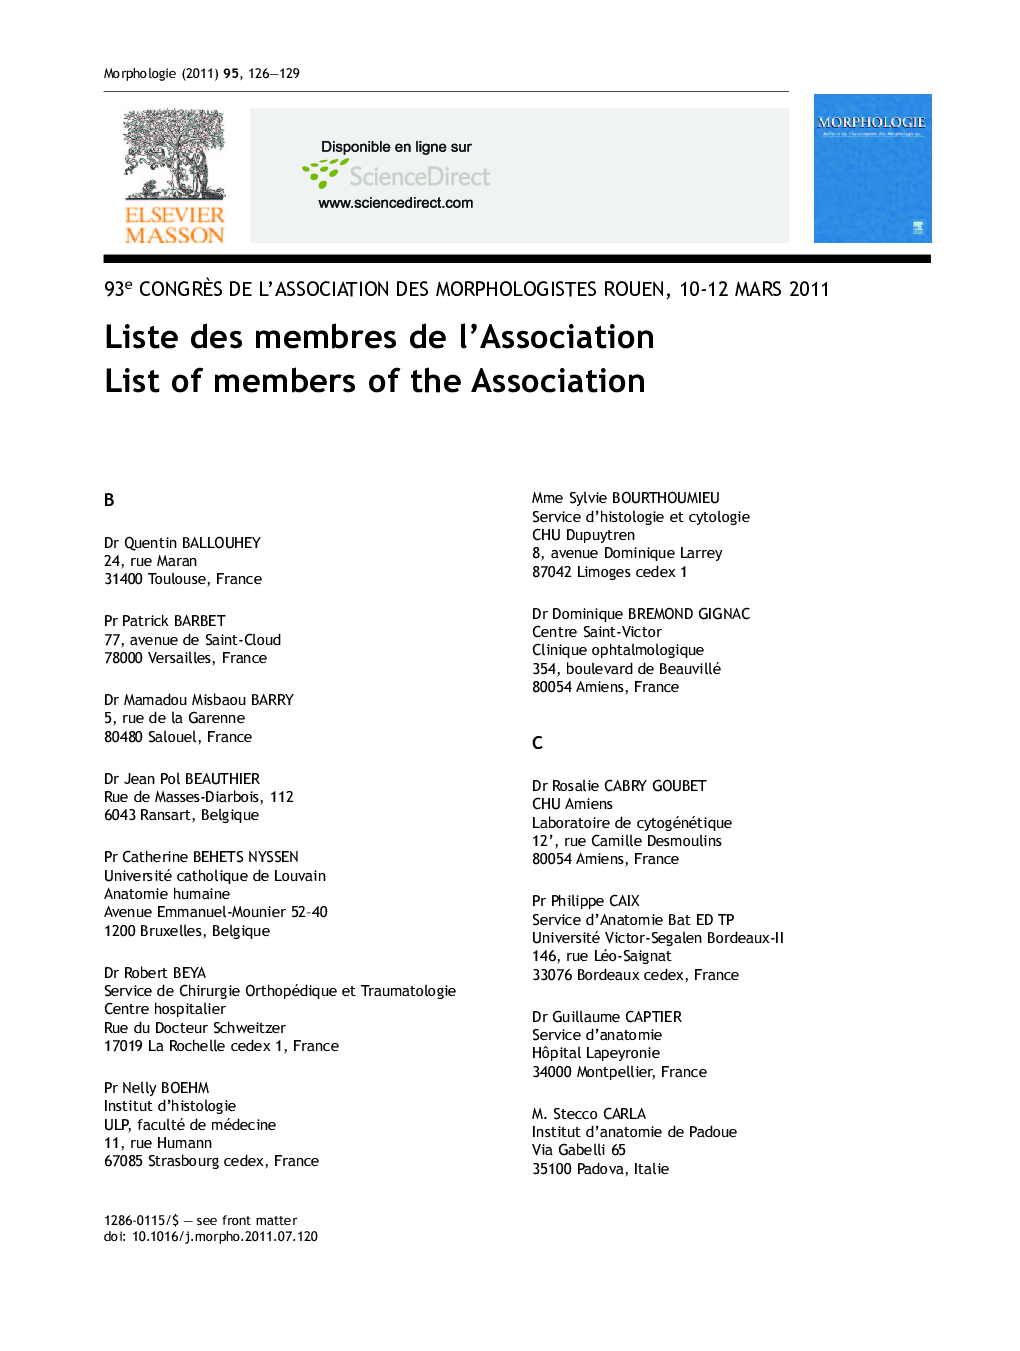 Liste des membres de l'association